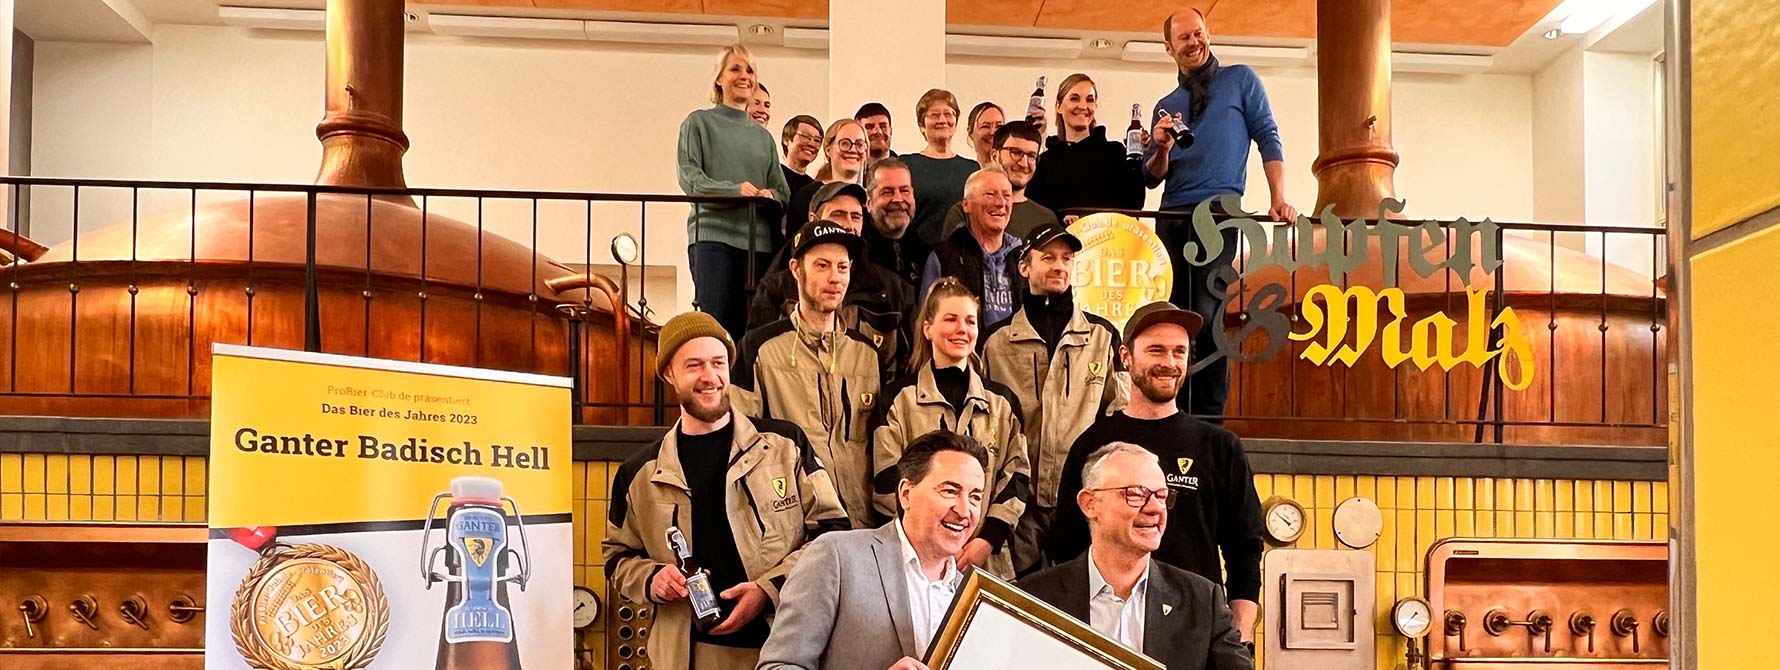 Das Ganter Team posiert für einem Foto in der Brauerei.